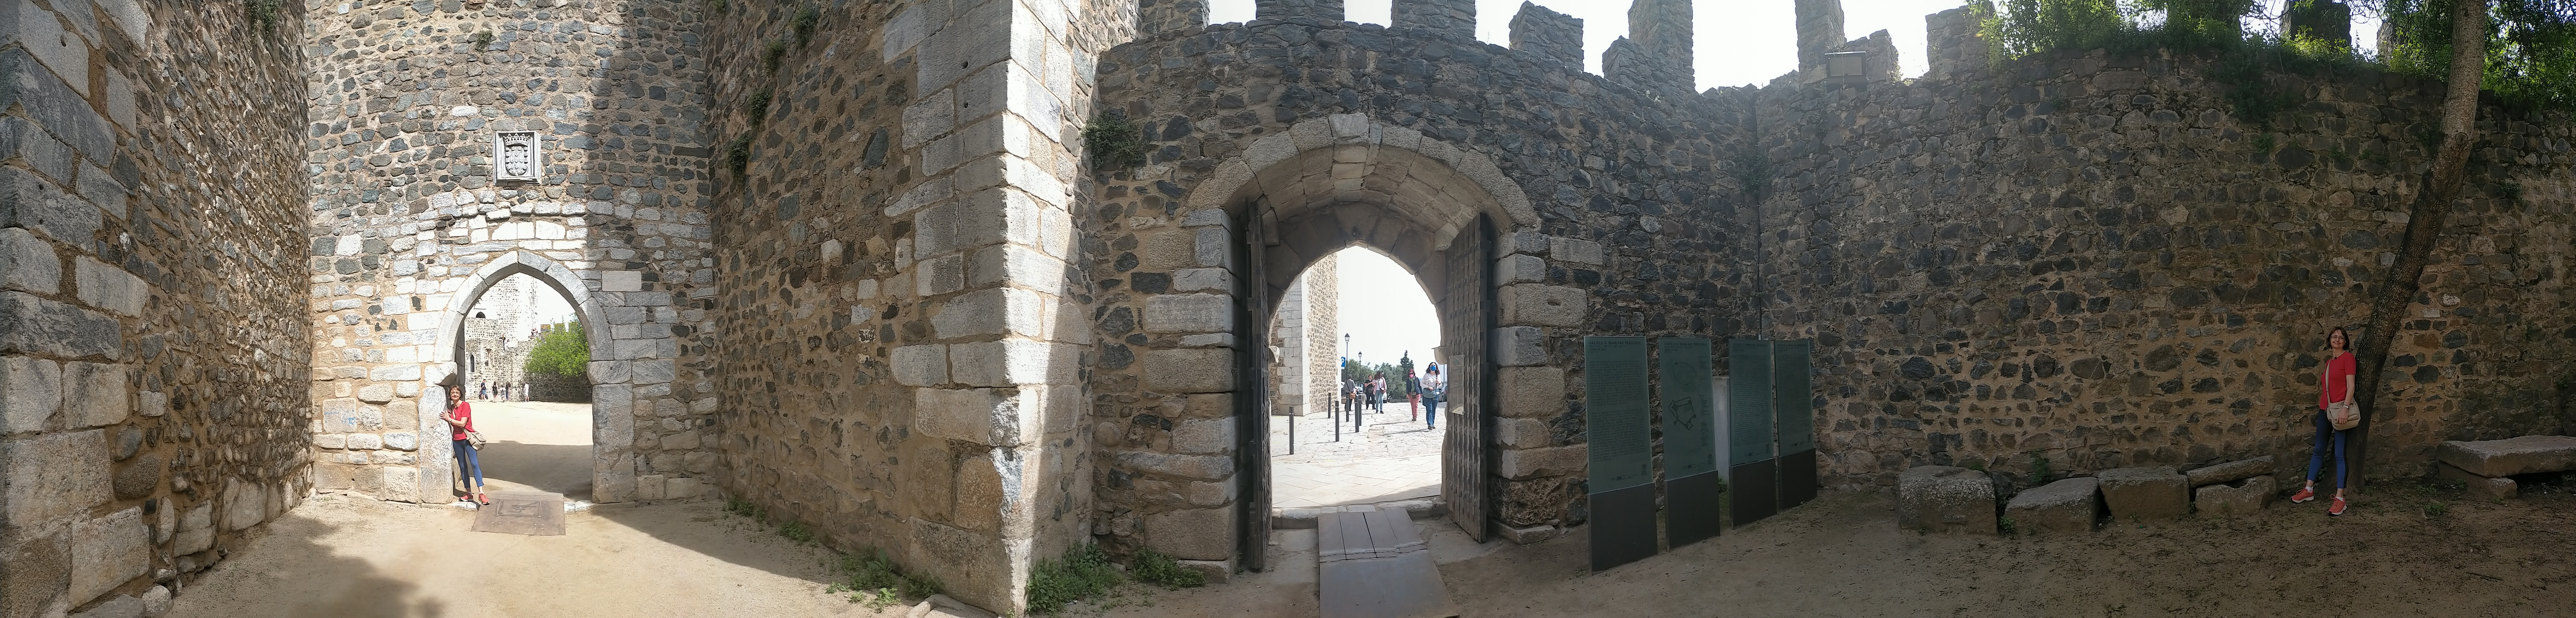 entrada castillo de Beja